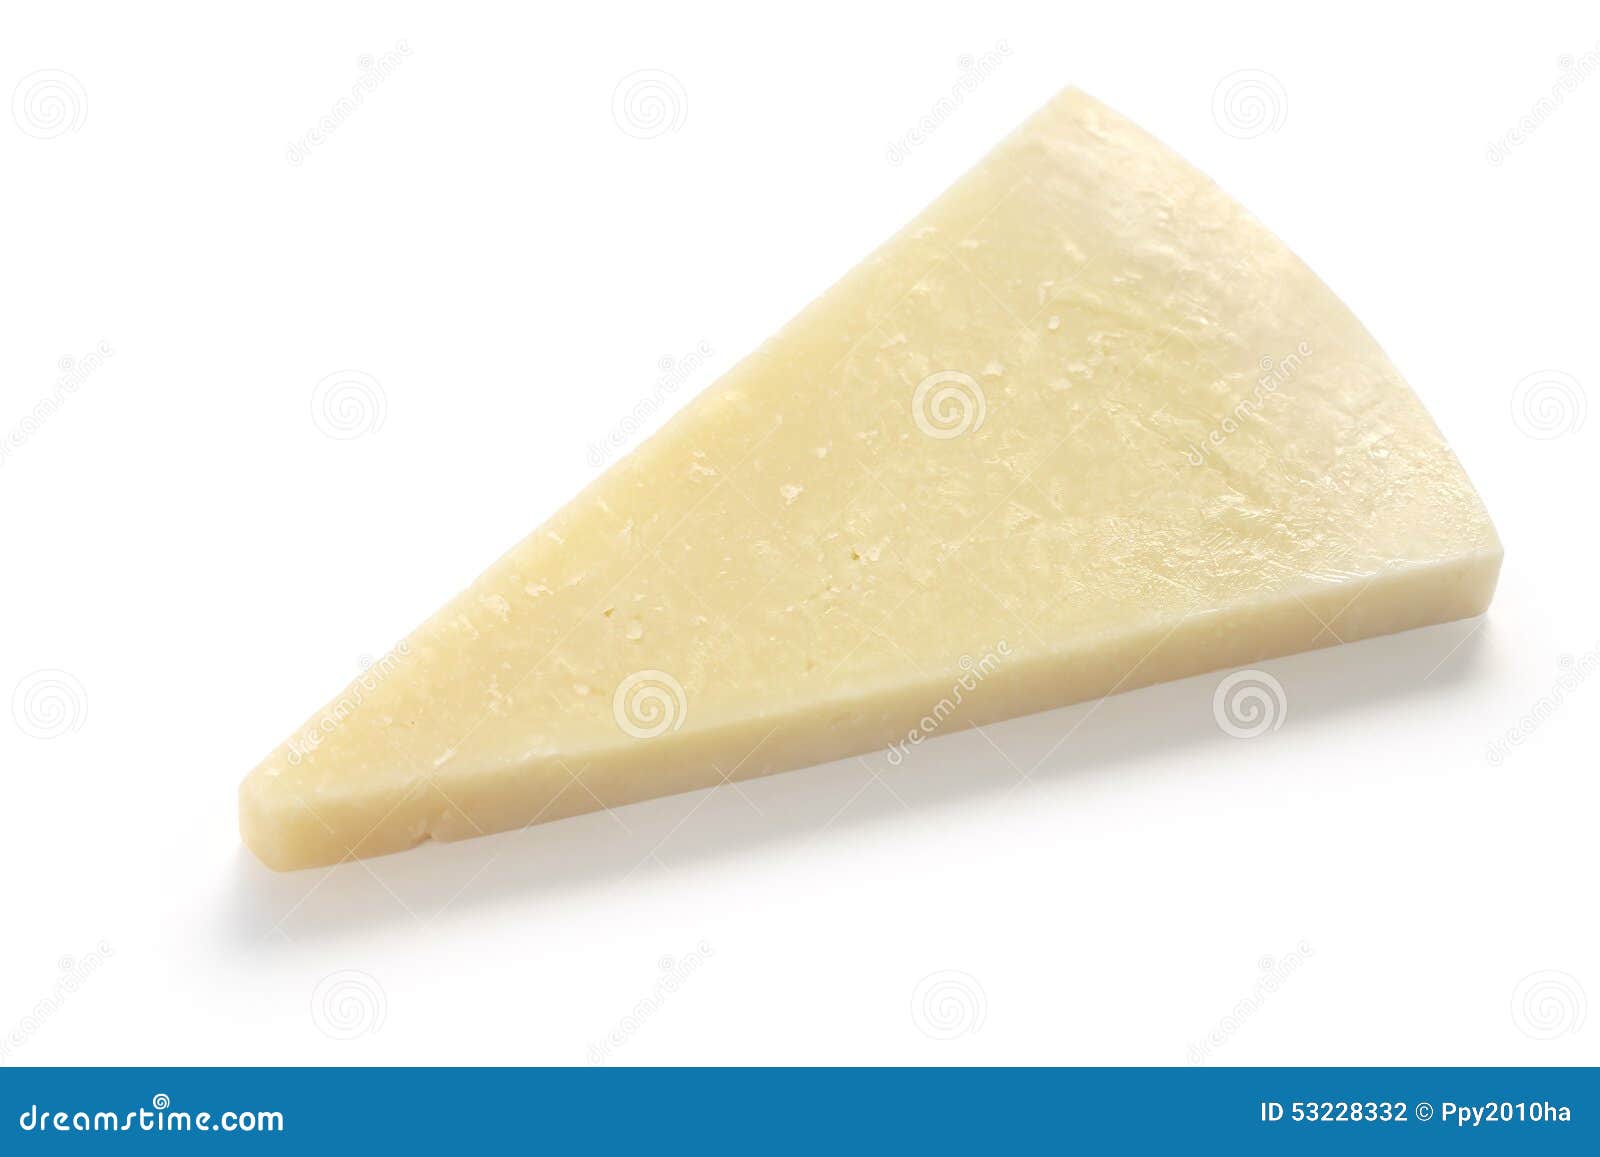 pecorino romano, italian cheese